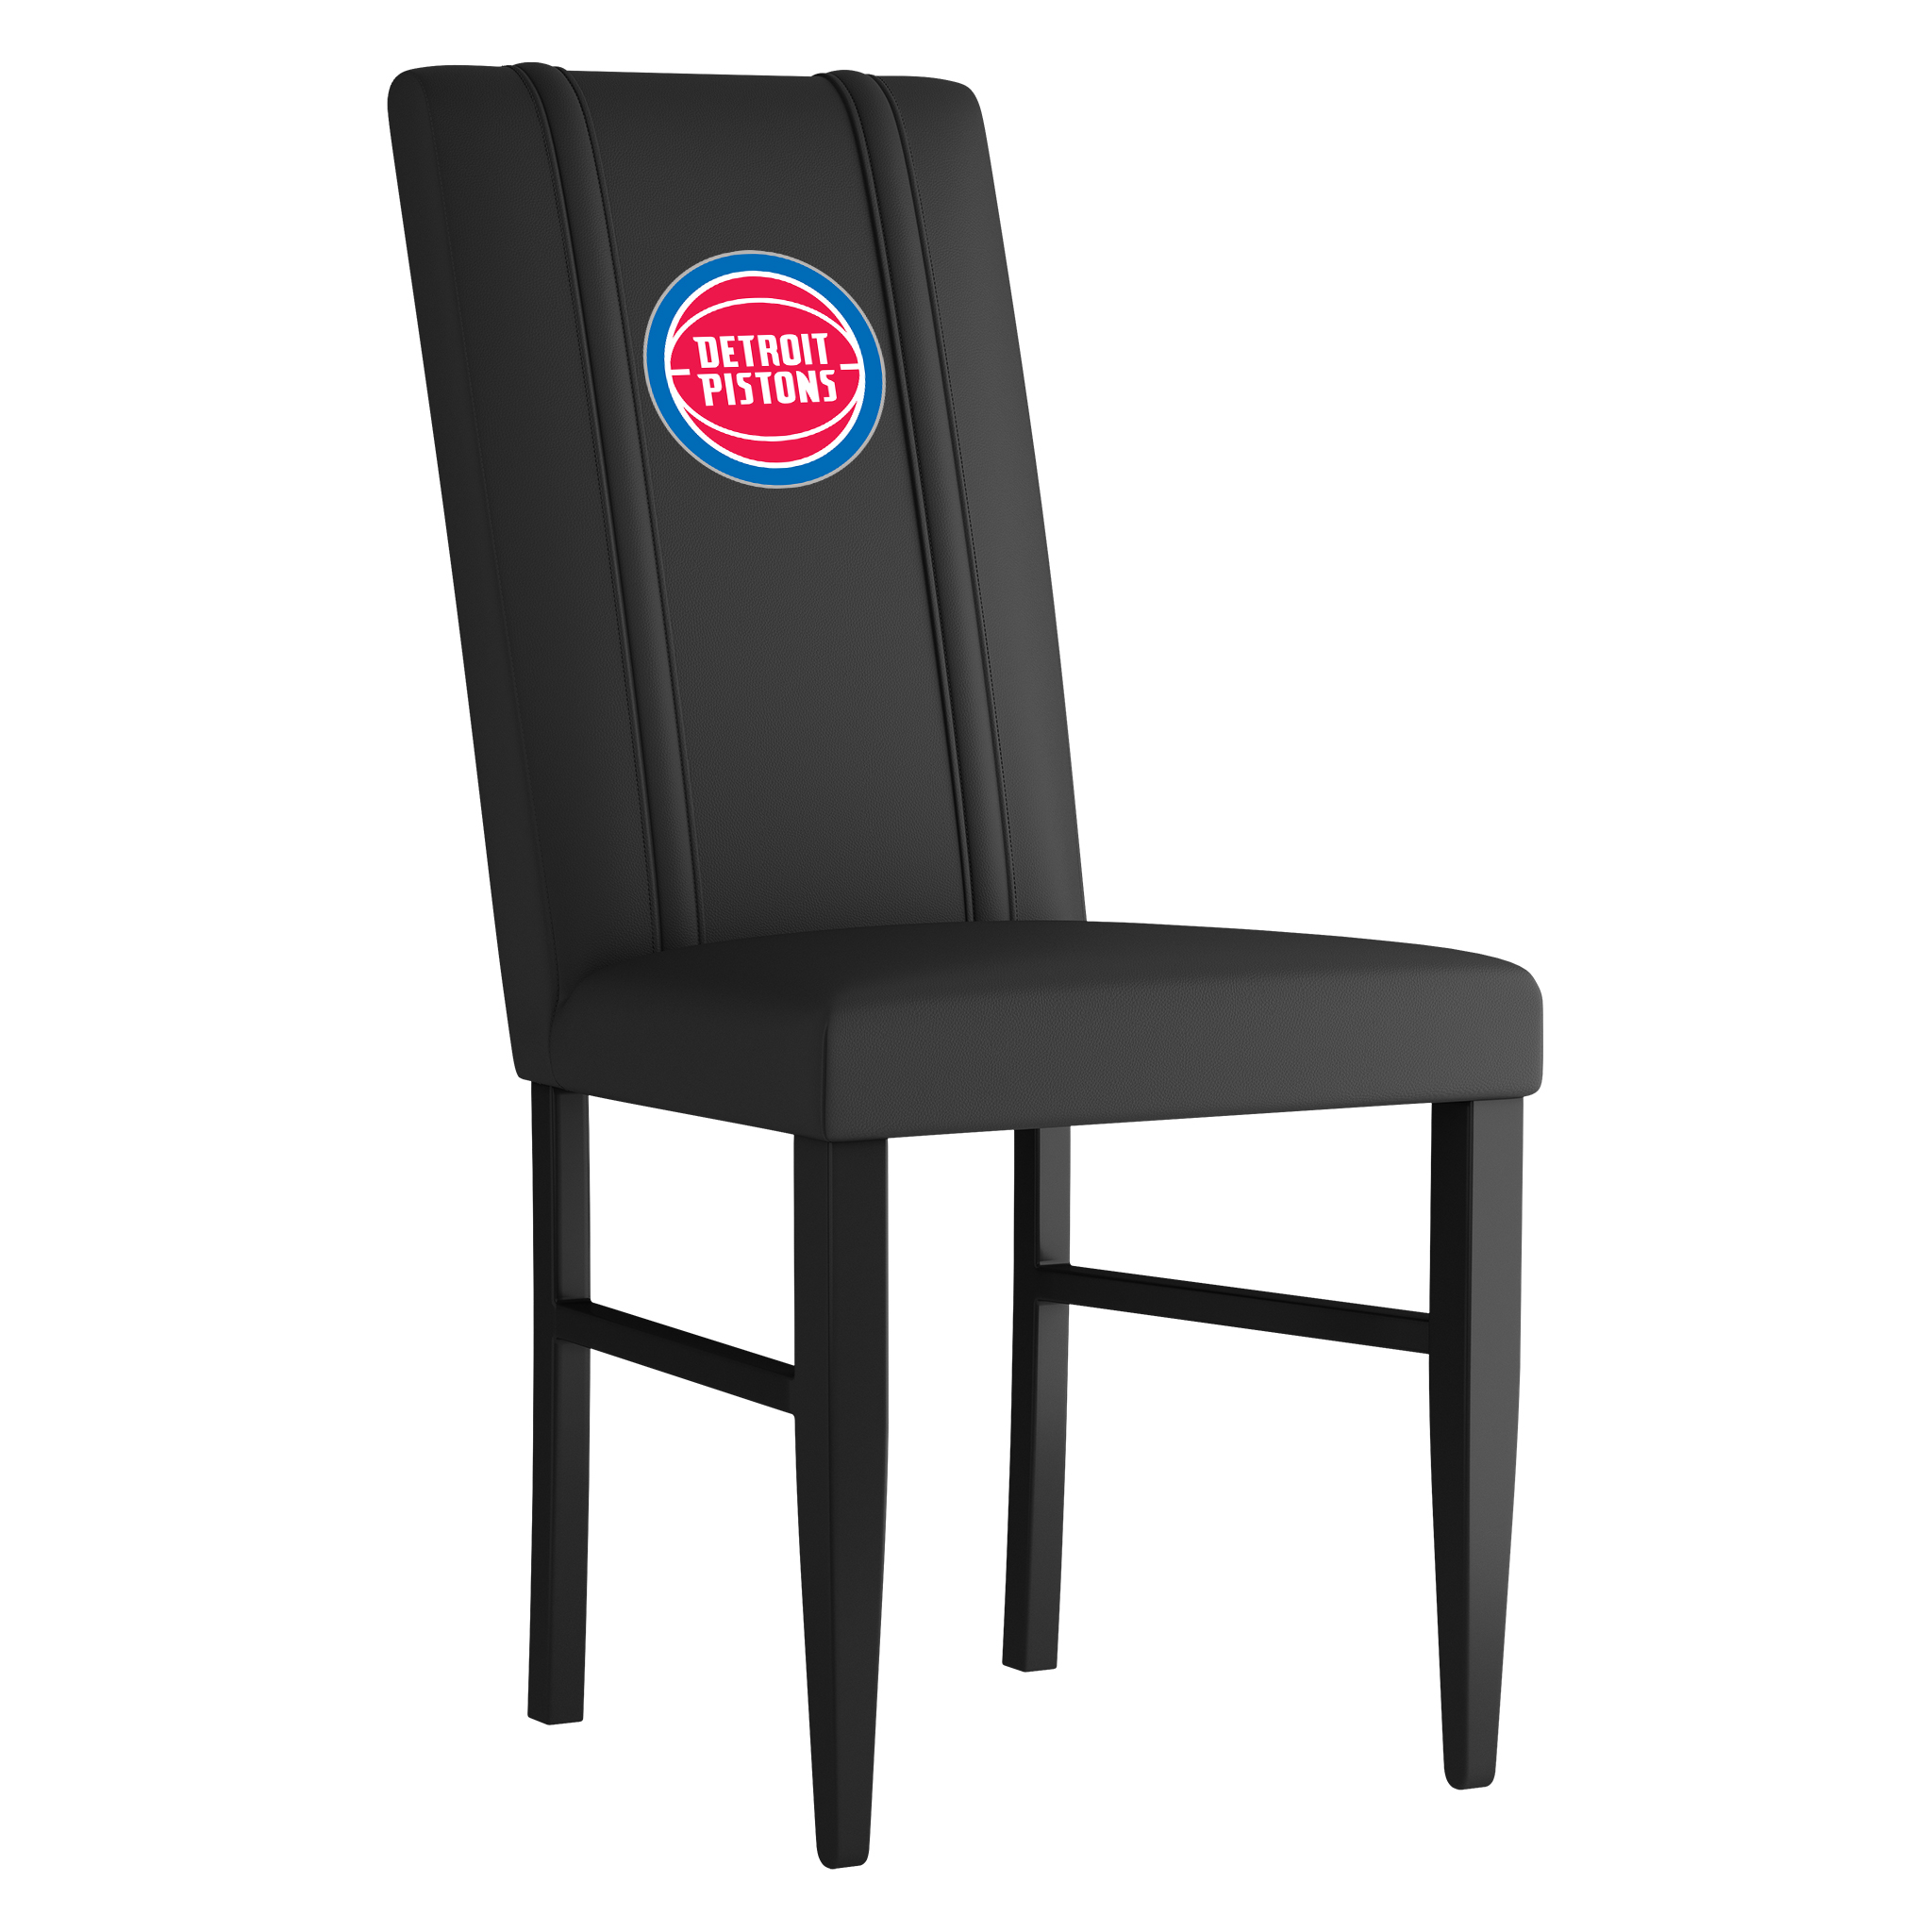 Detroit Pistons Side Chair 2000 Detroit Pistons Logo